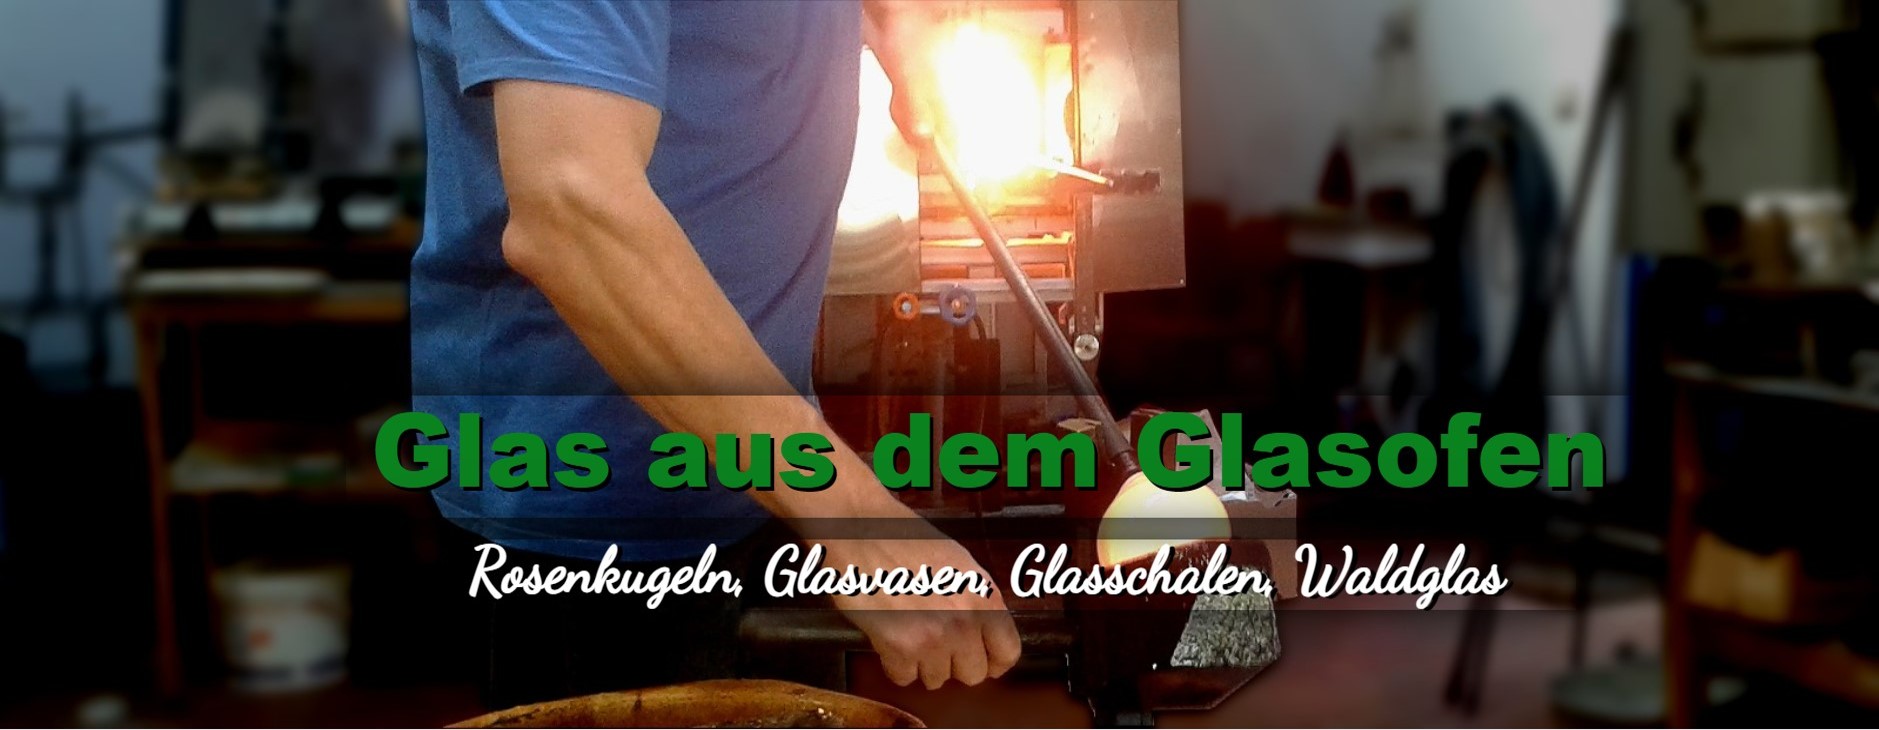 Rosenkugeln Glasvasen Glasglocken Glasschalen Waldglas aus Lauschaer Glas - Studioglashütte Lauscha